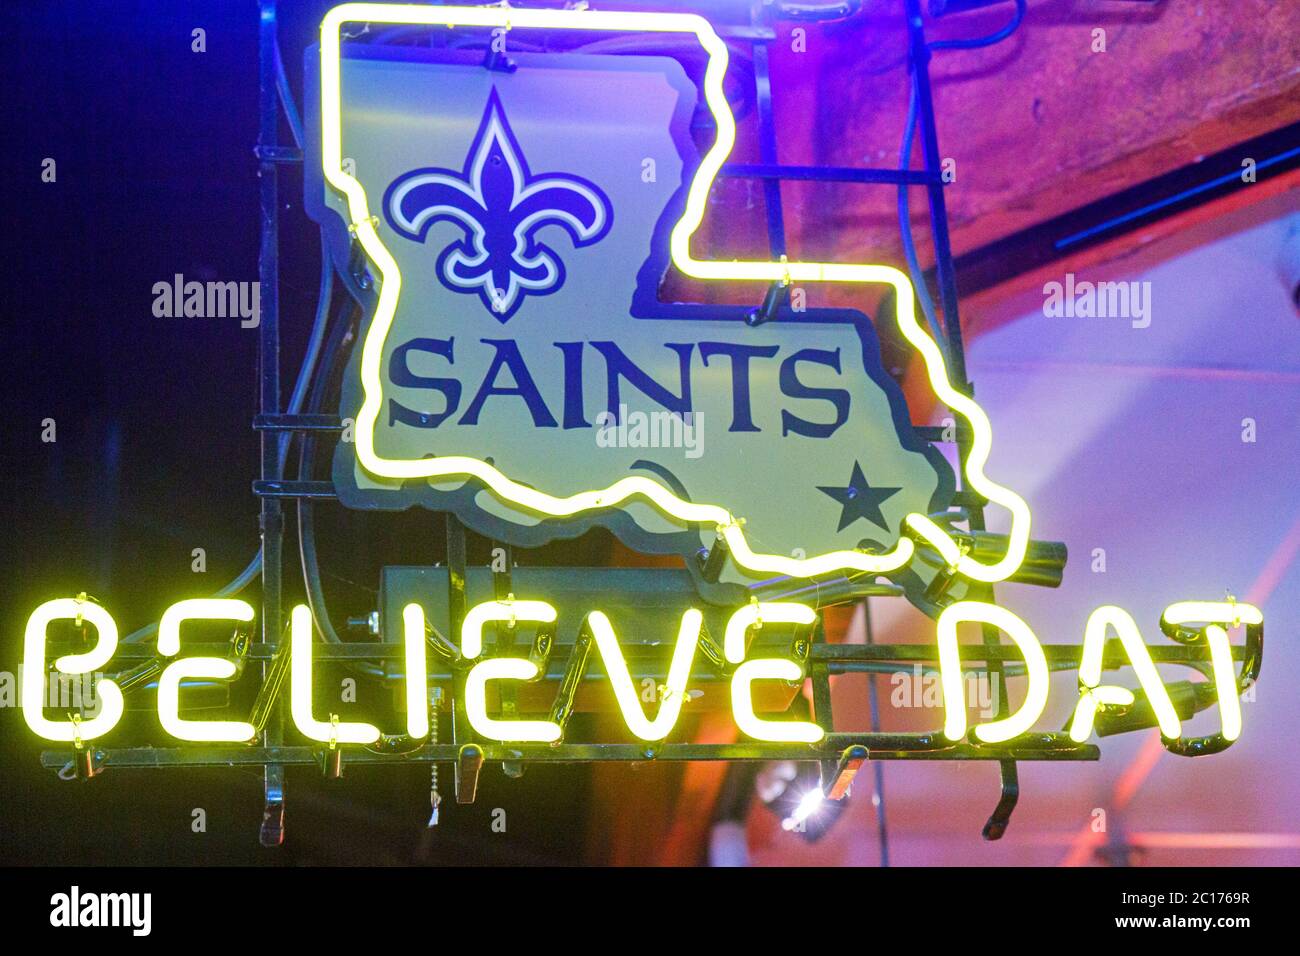 New Orleans Louisiana,Canal Street,centro,Believe DAT,campaña publicitaria,New Orleans Saints,ganadores del Super Bowl,equipo de fútbol,signo de neón,contorno del mapa del estado,LA Foto de stock